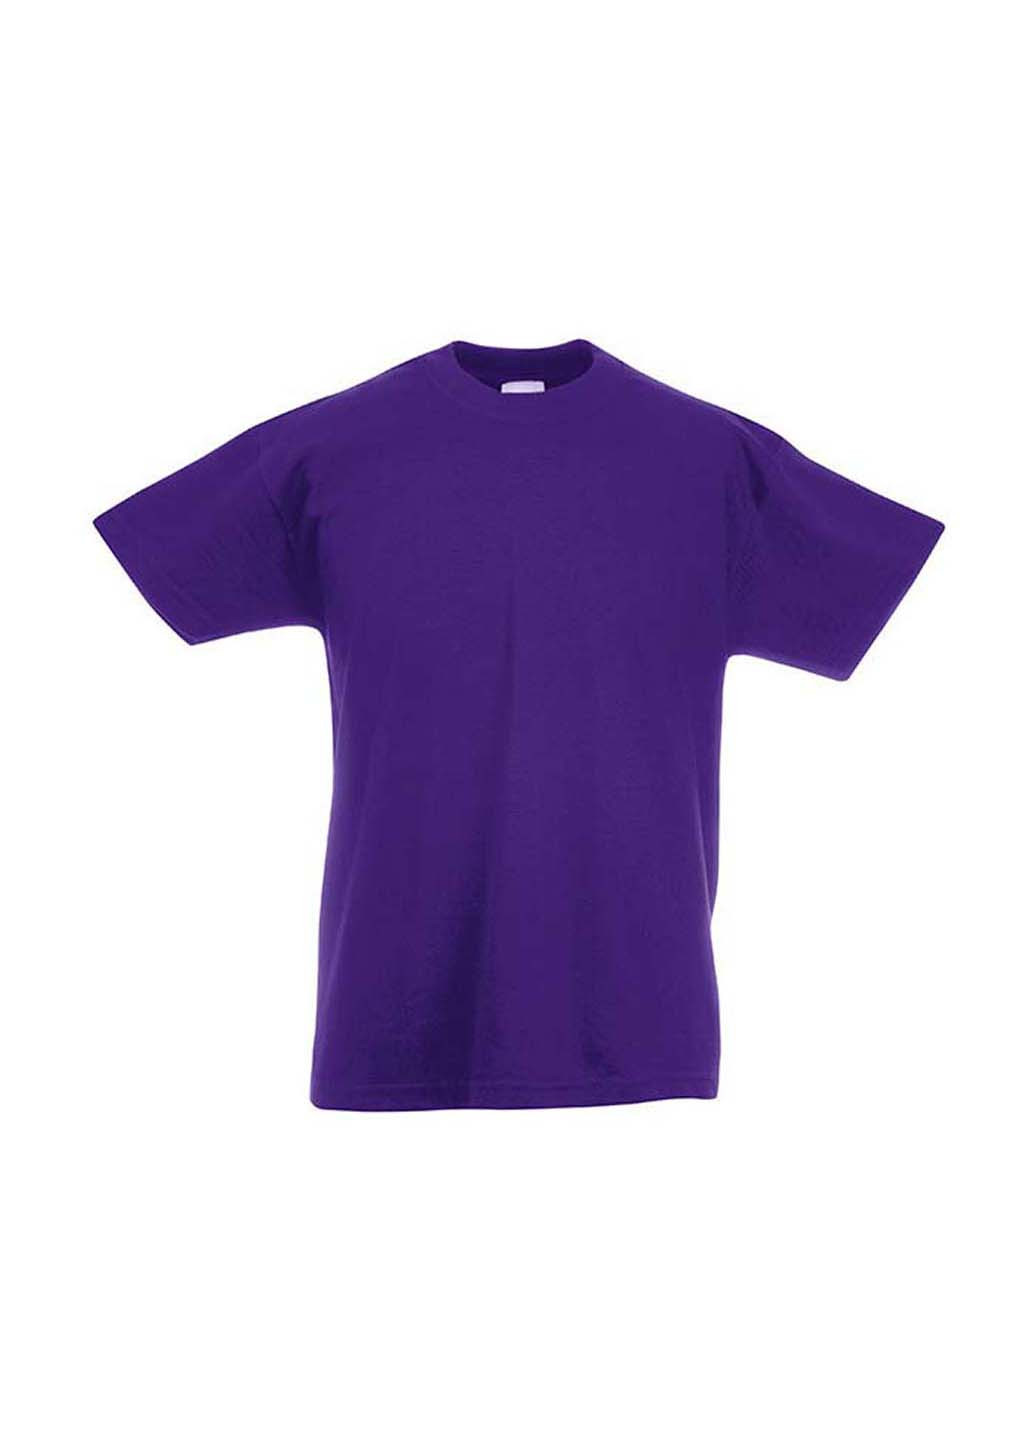 Фиолетовая демисезонная футболка Fruit of the Loom 0610330PE164